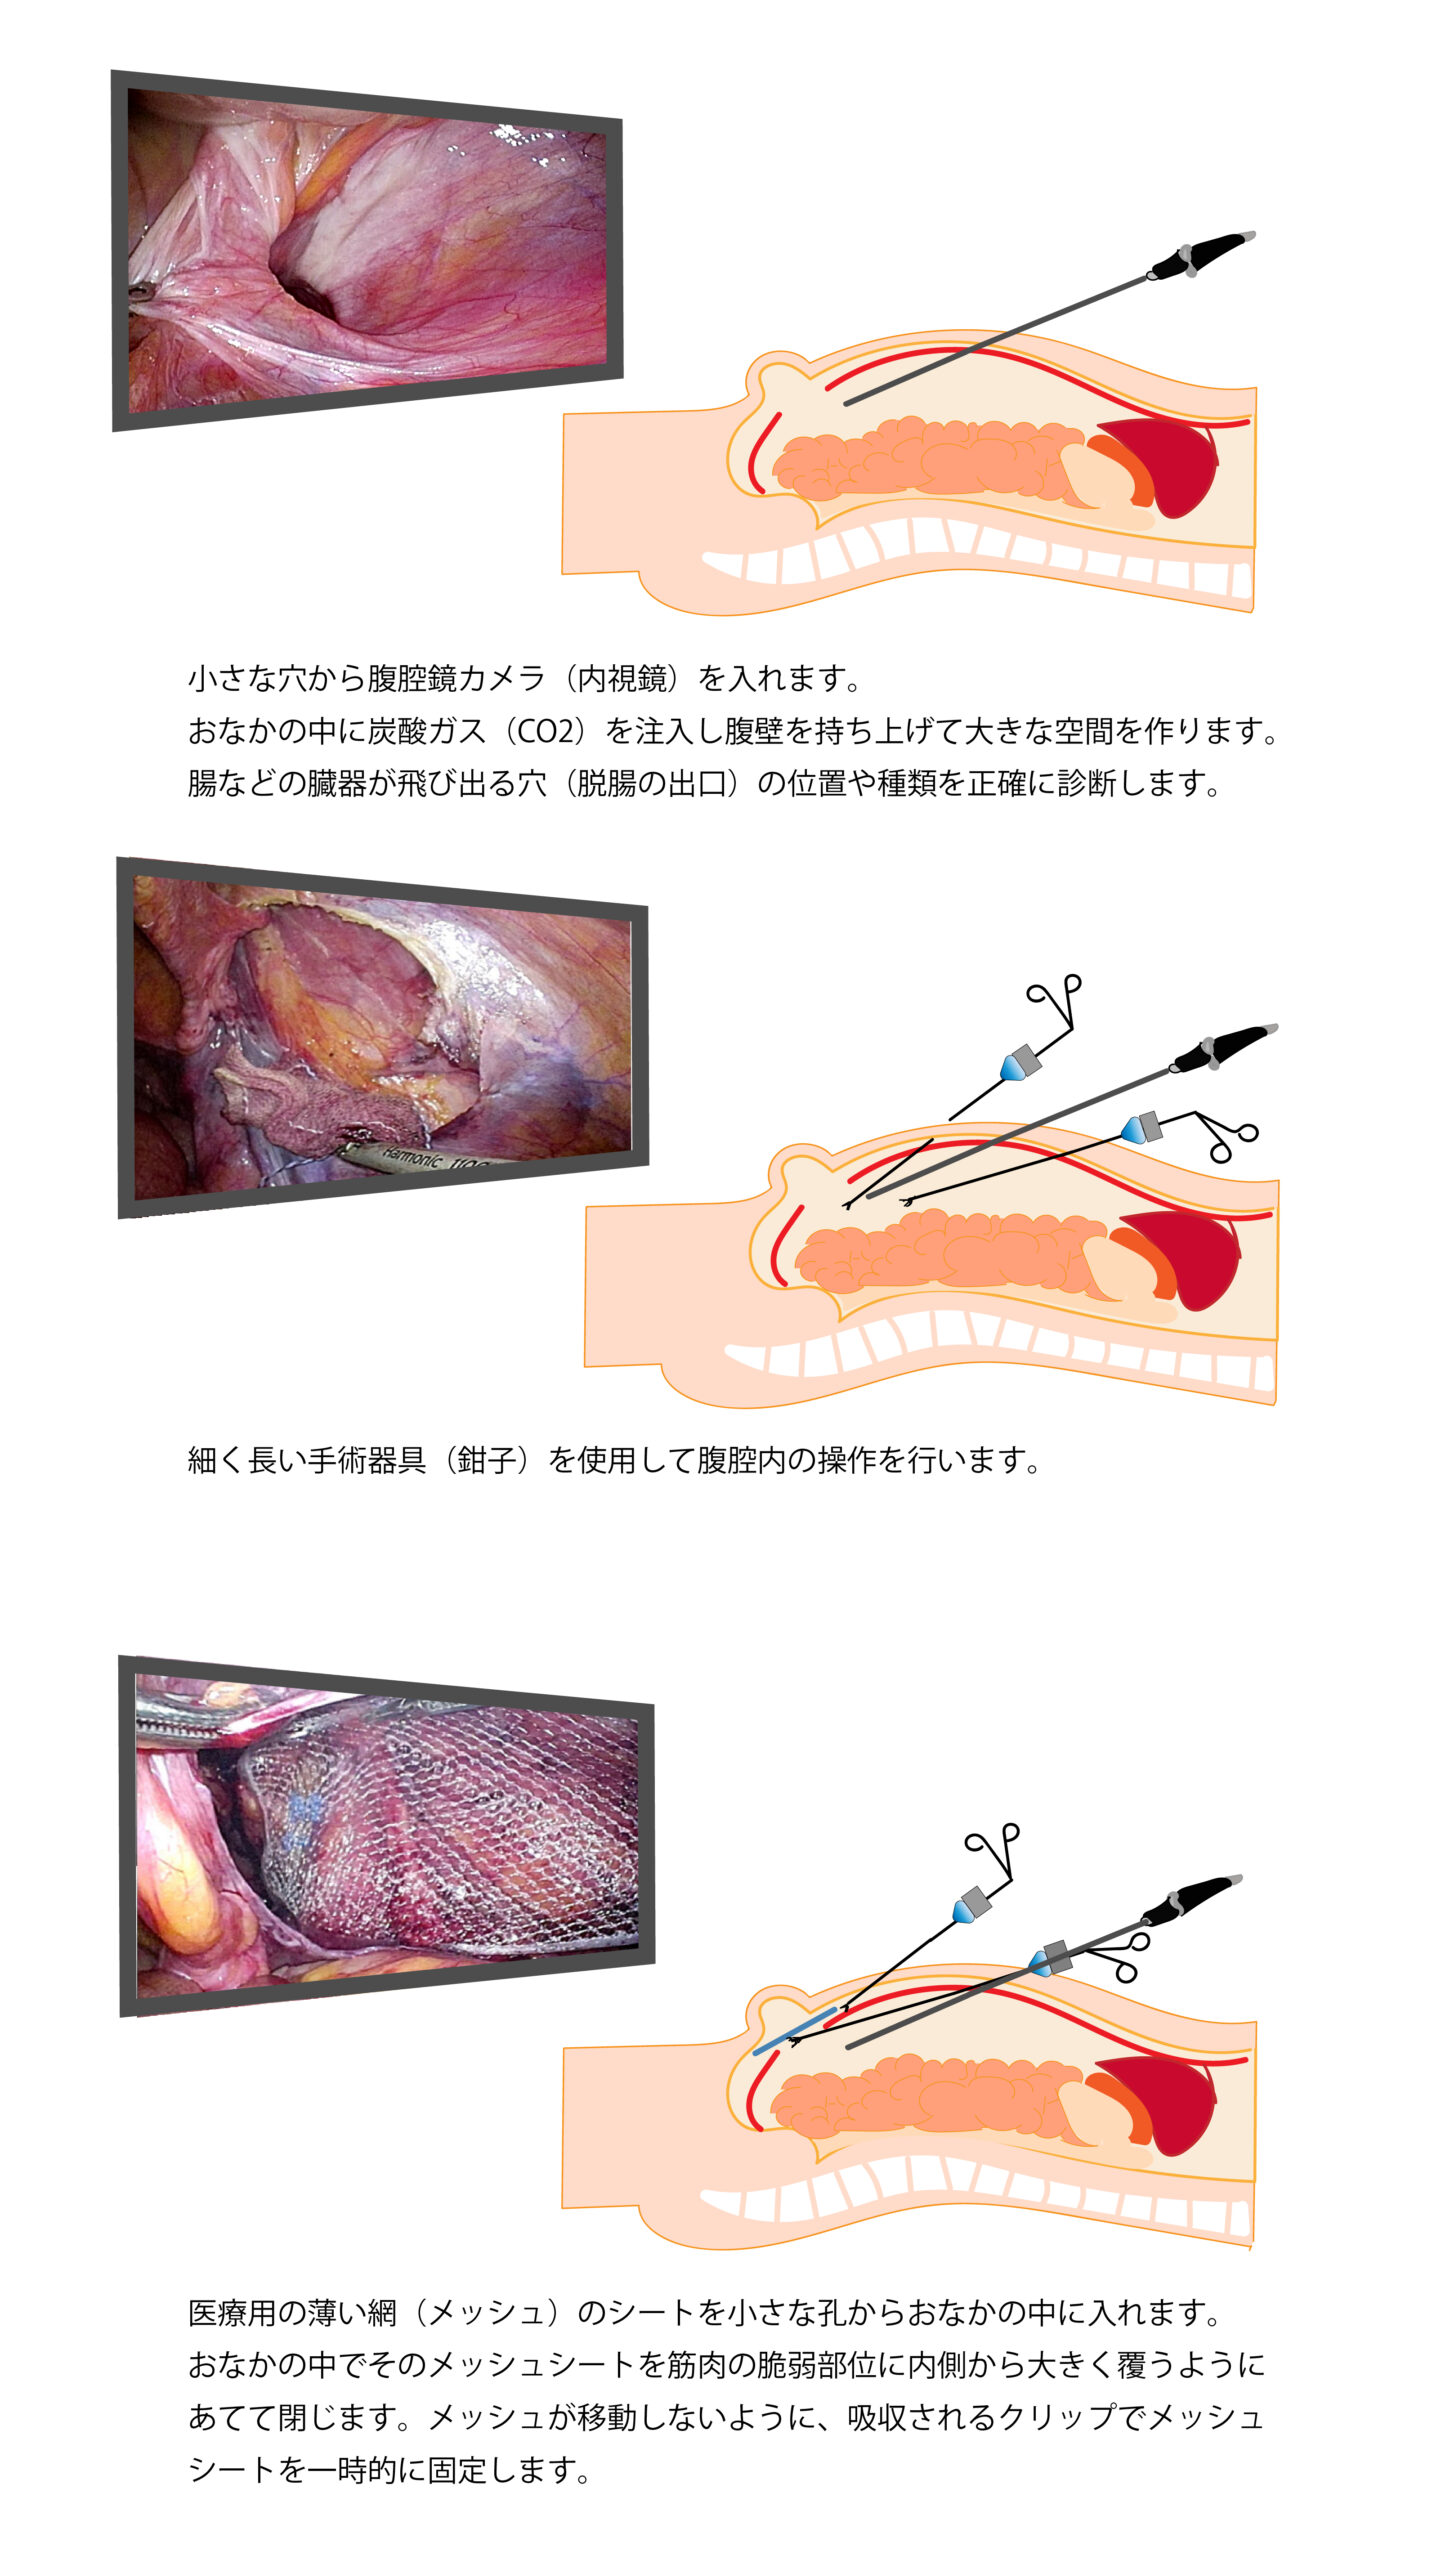 動画でわかる腹腔鏡下鼠径部ヘルニア修復術ーTAPP法のすべてー